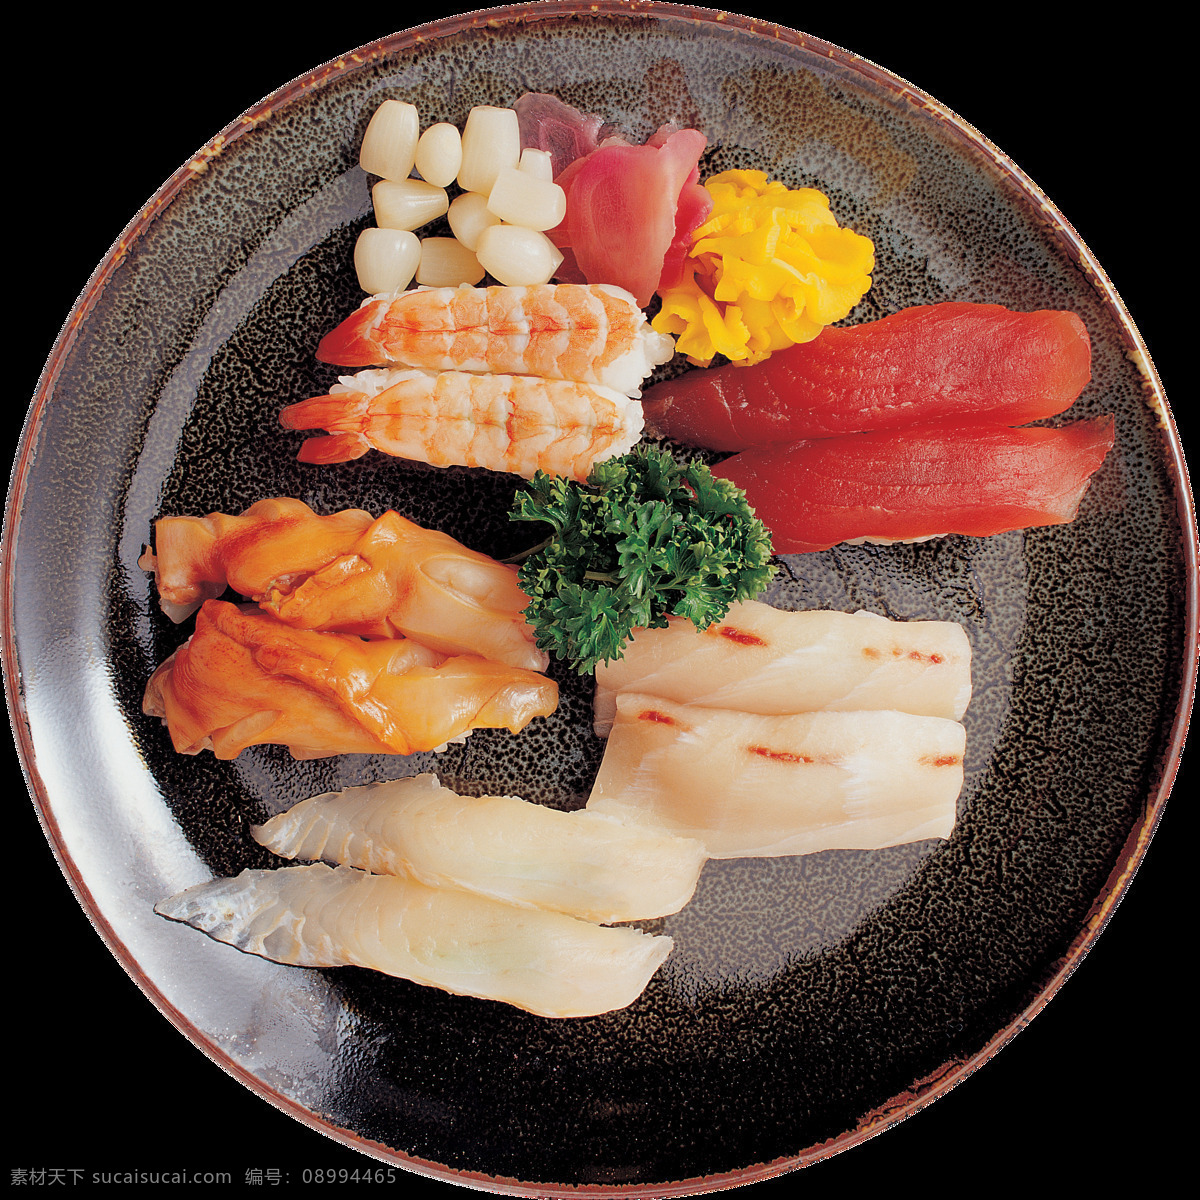 精美 生鲜 日式 料理 美食 装饰 元素 刺身 日式料理 日式美食 深色盘子 装饰元素